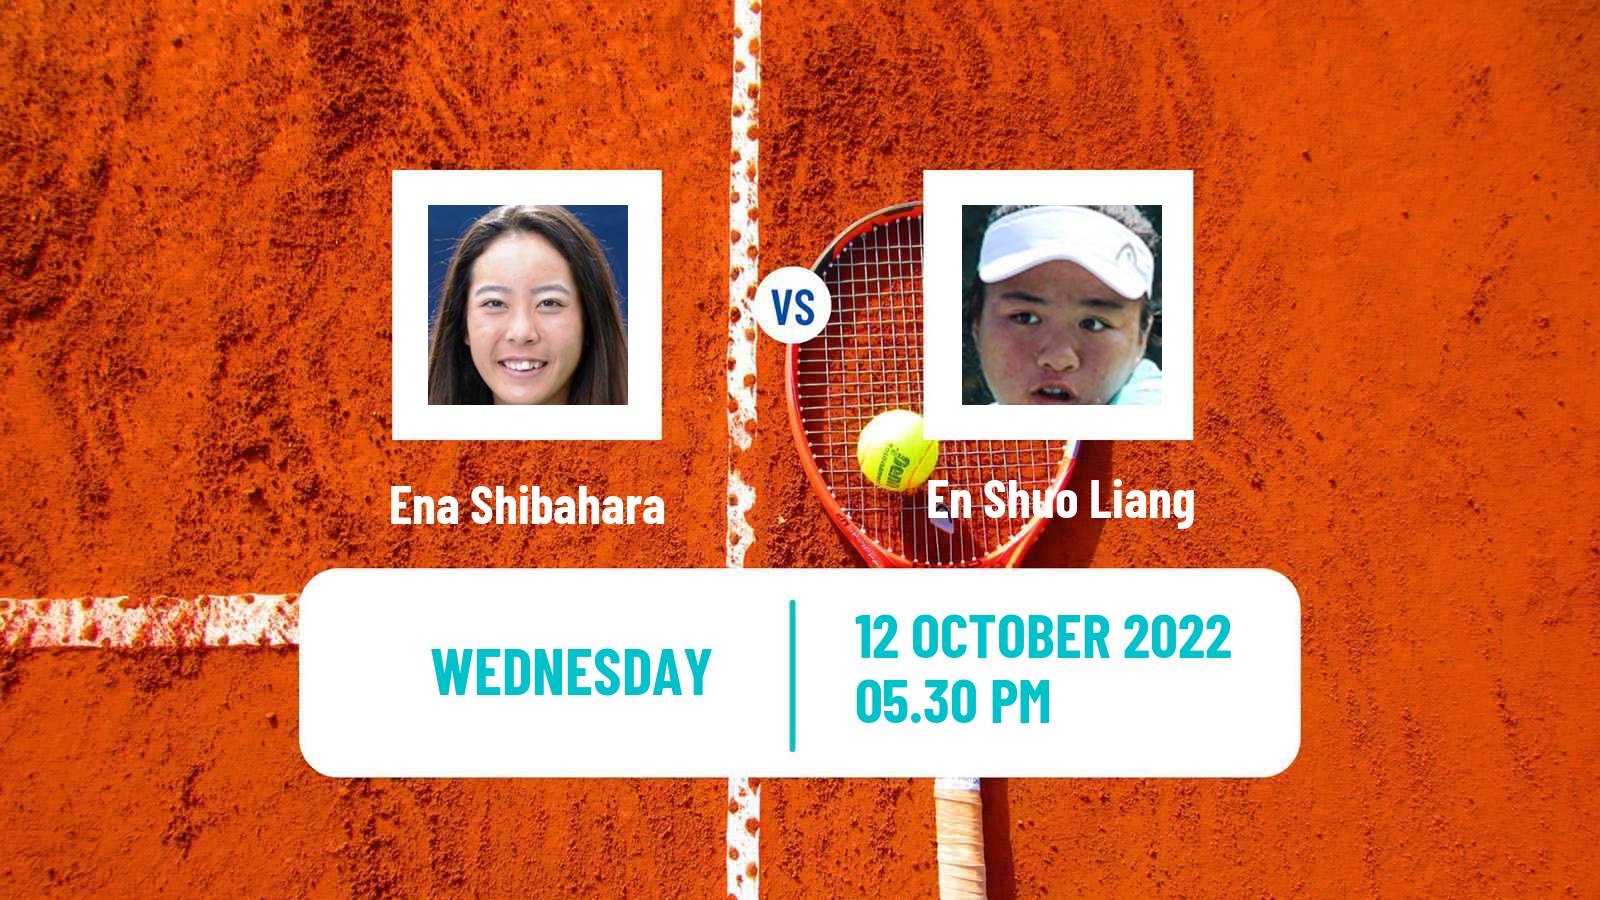 Tennis ITF Tournaments Ena Shibahara - En Shuo Liang